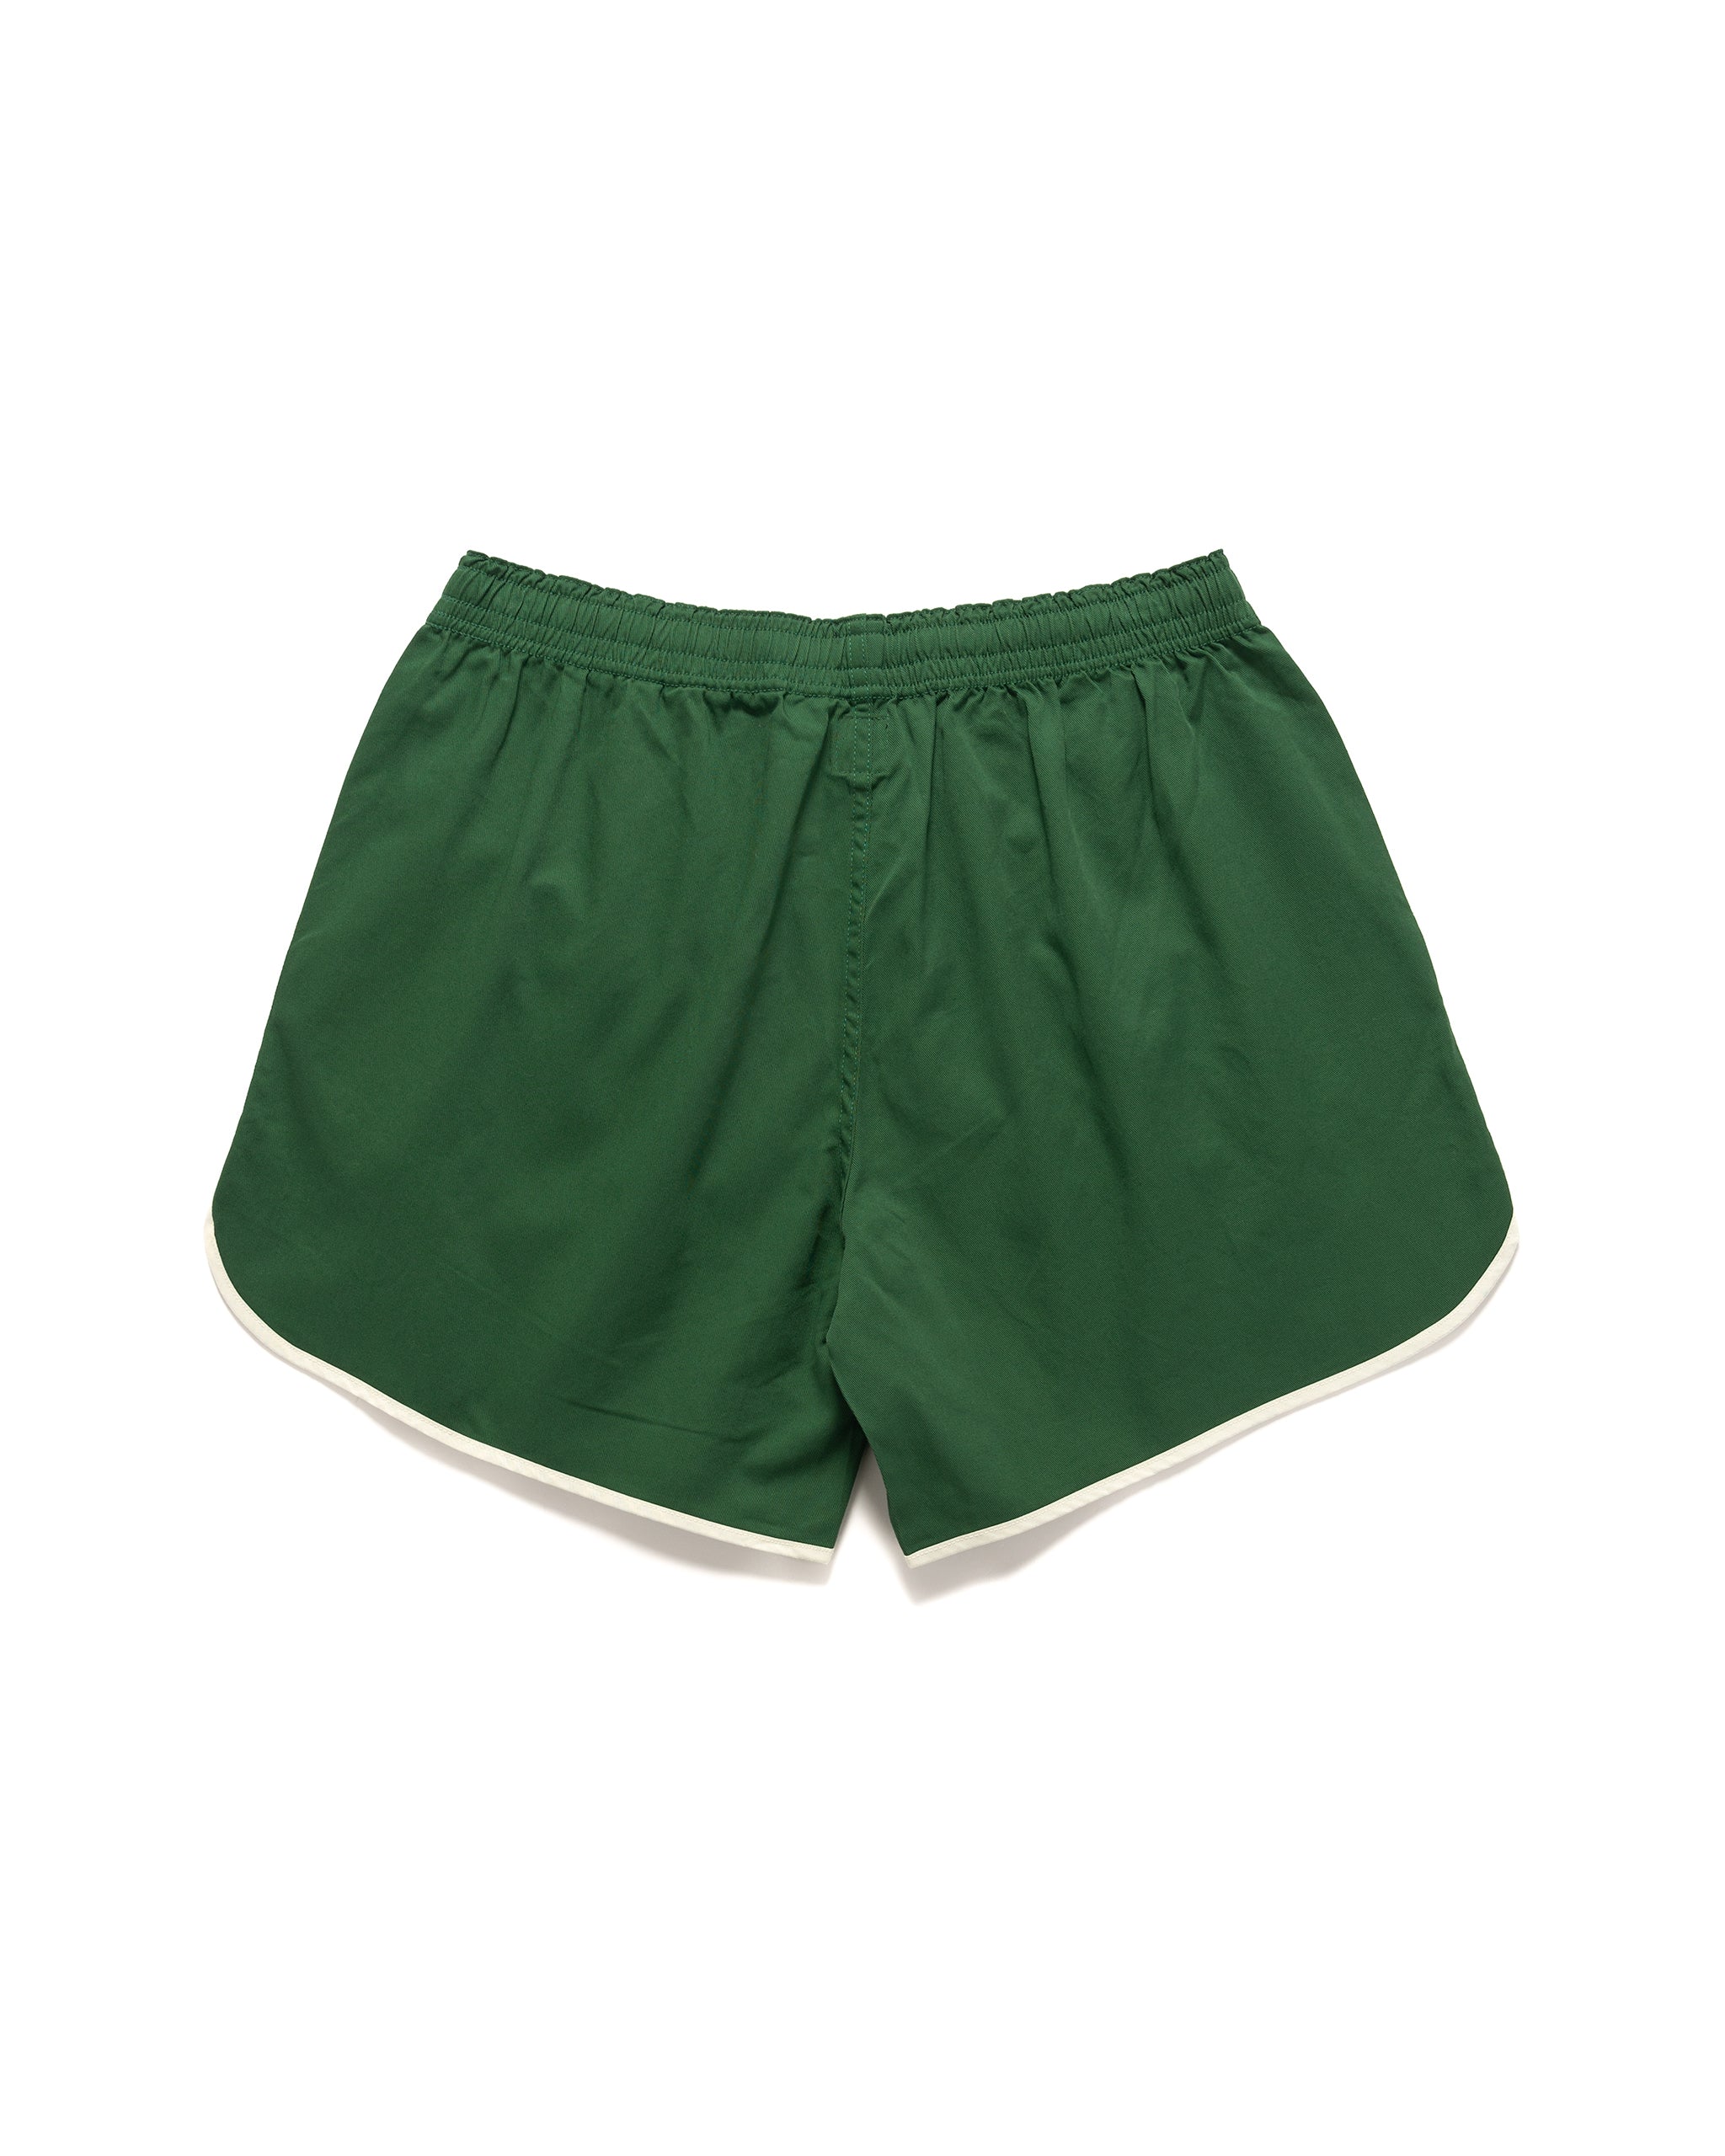 完売品 human made game shorts green XL-